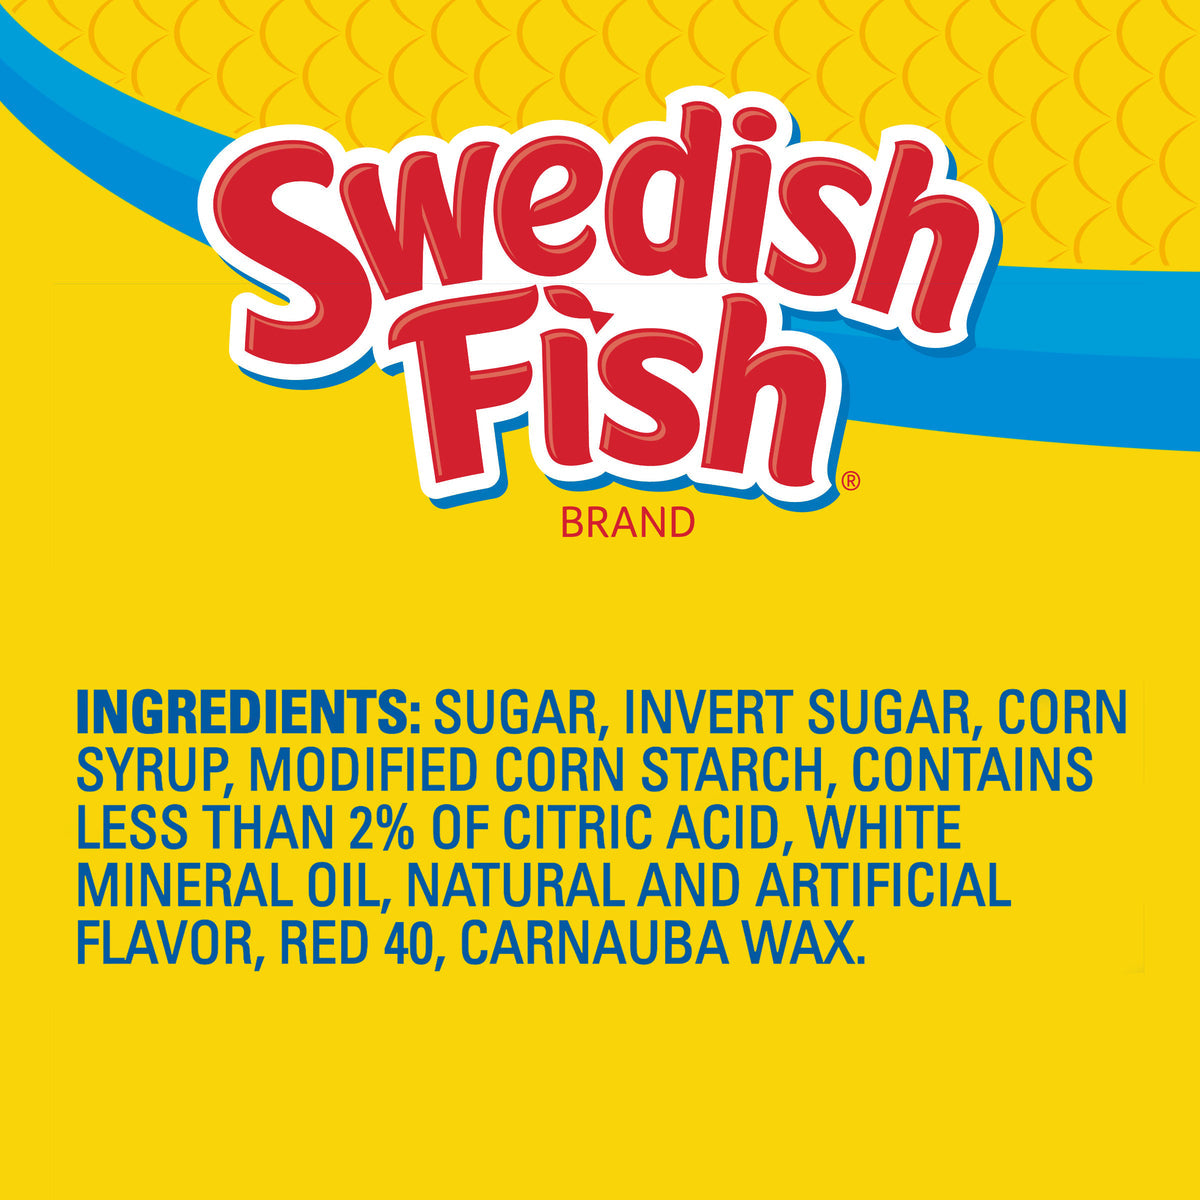 Swedish Fish – pinkiessweeties